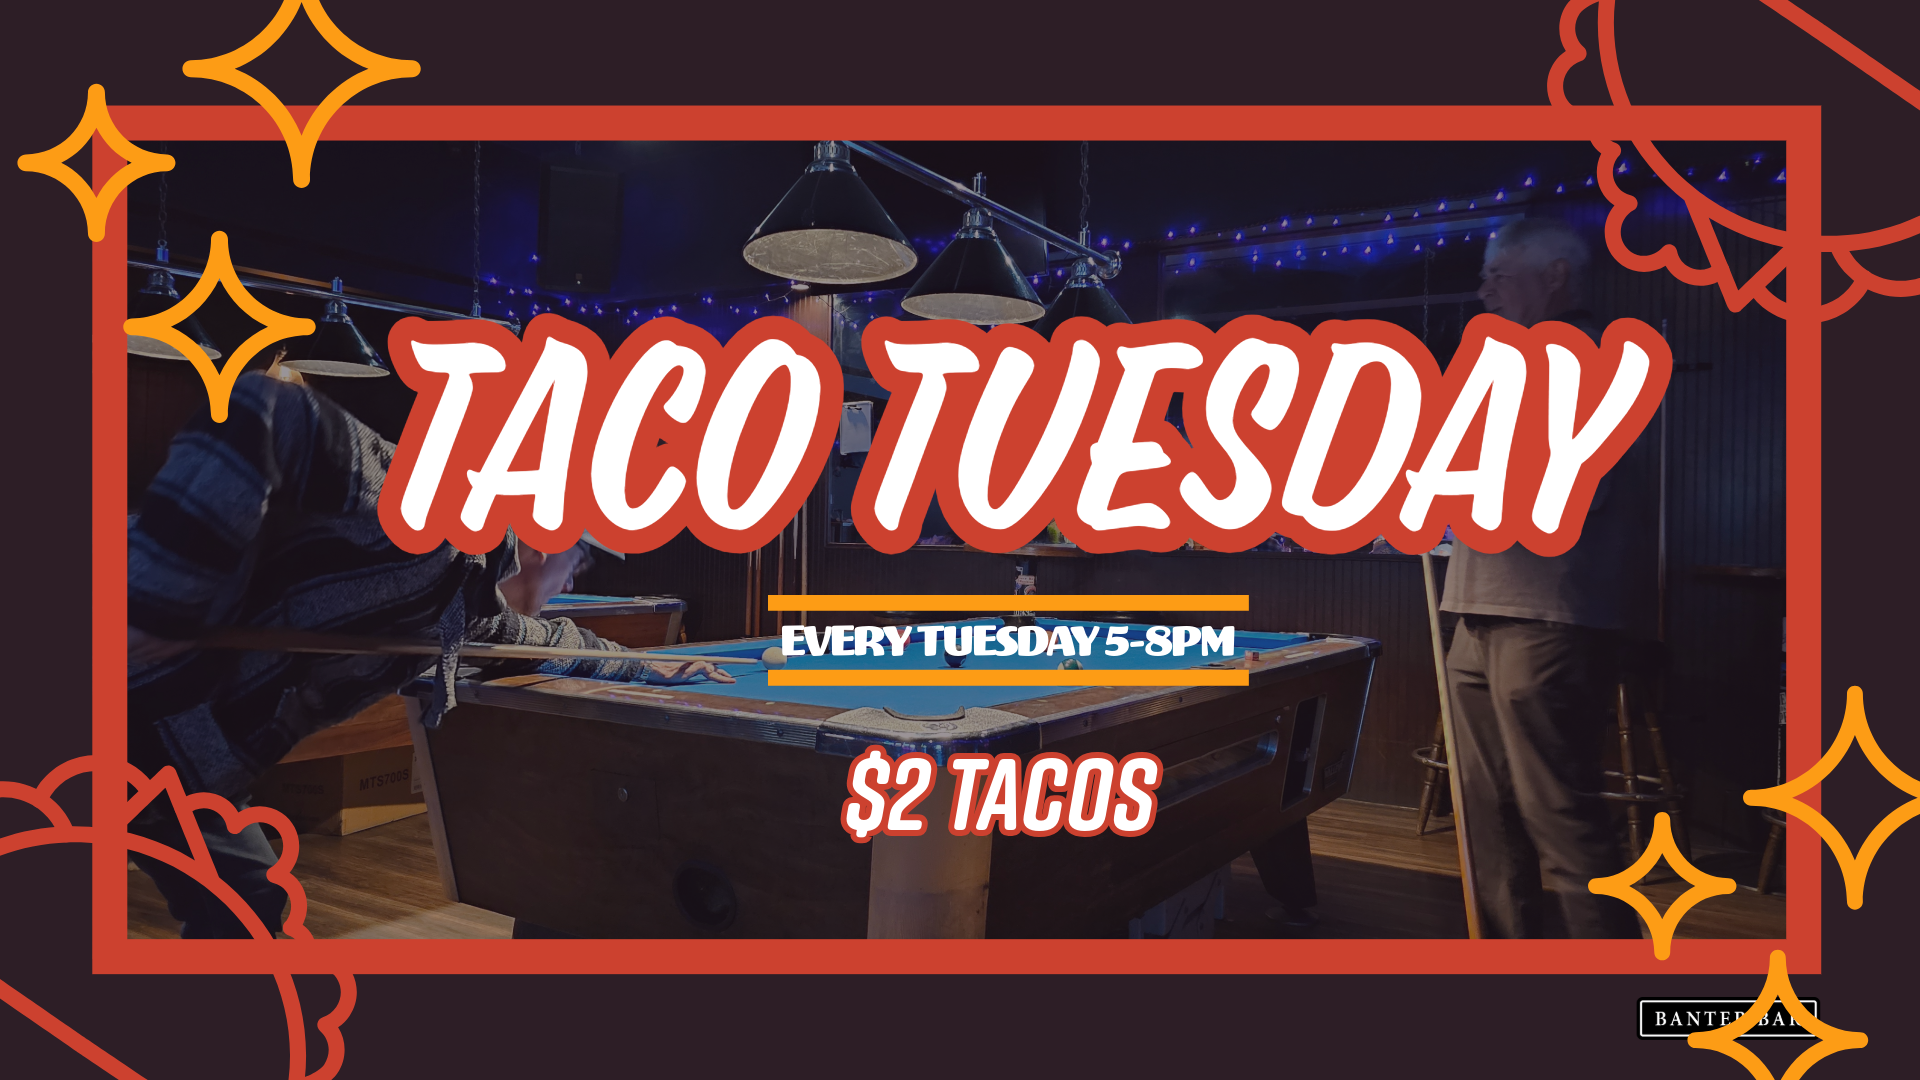 Taco Tuesday at Banter Bar Los Angeles